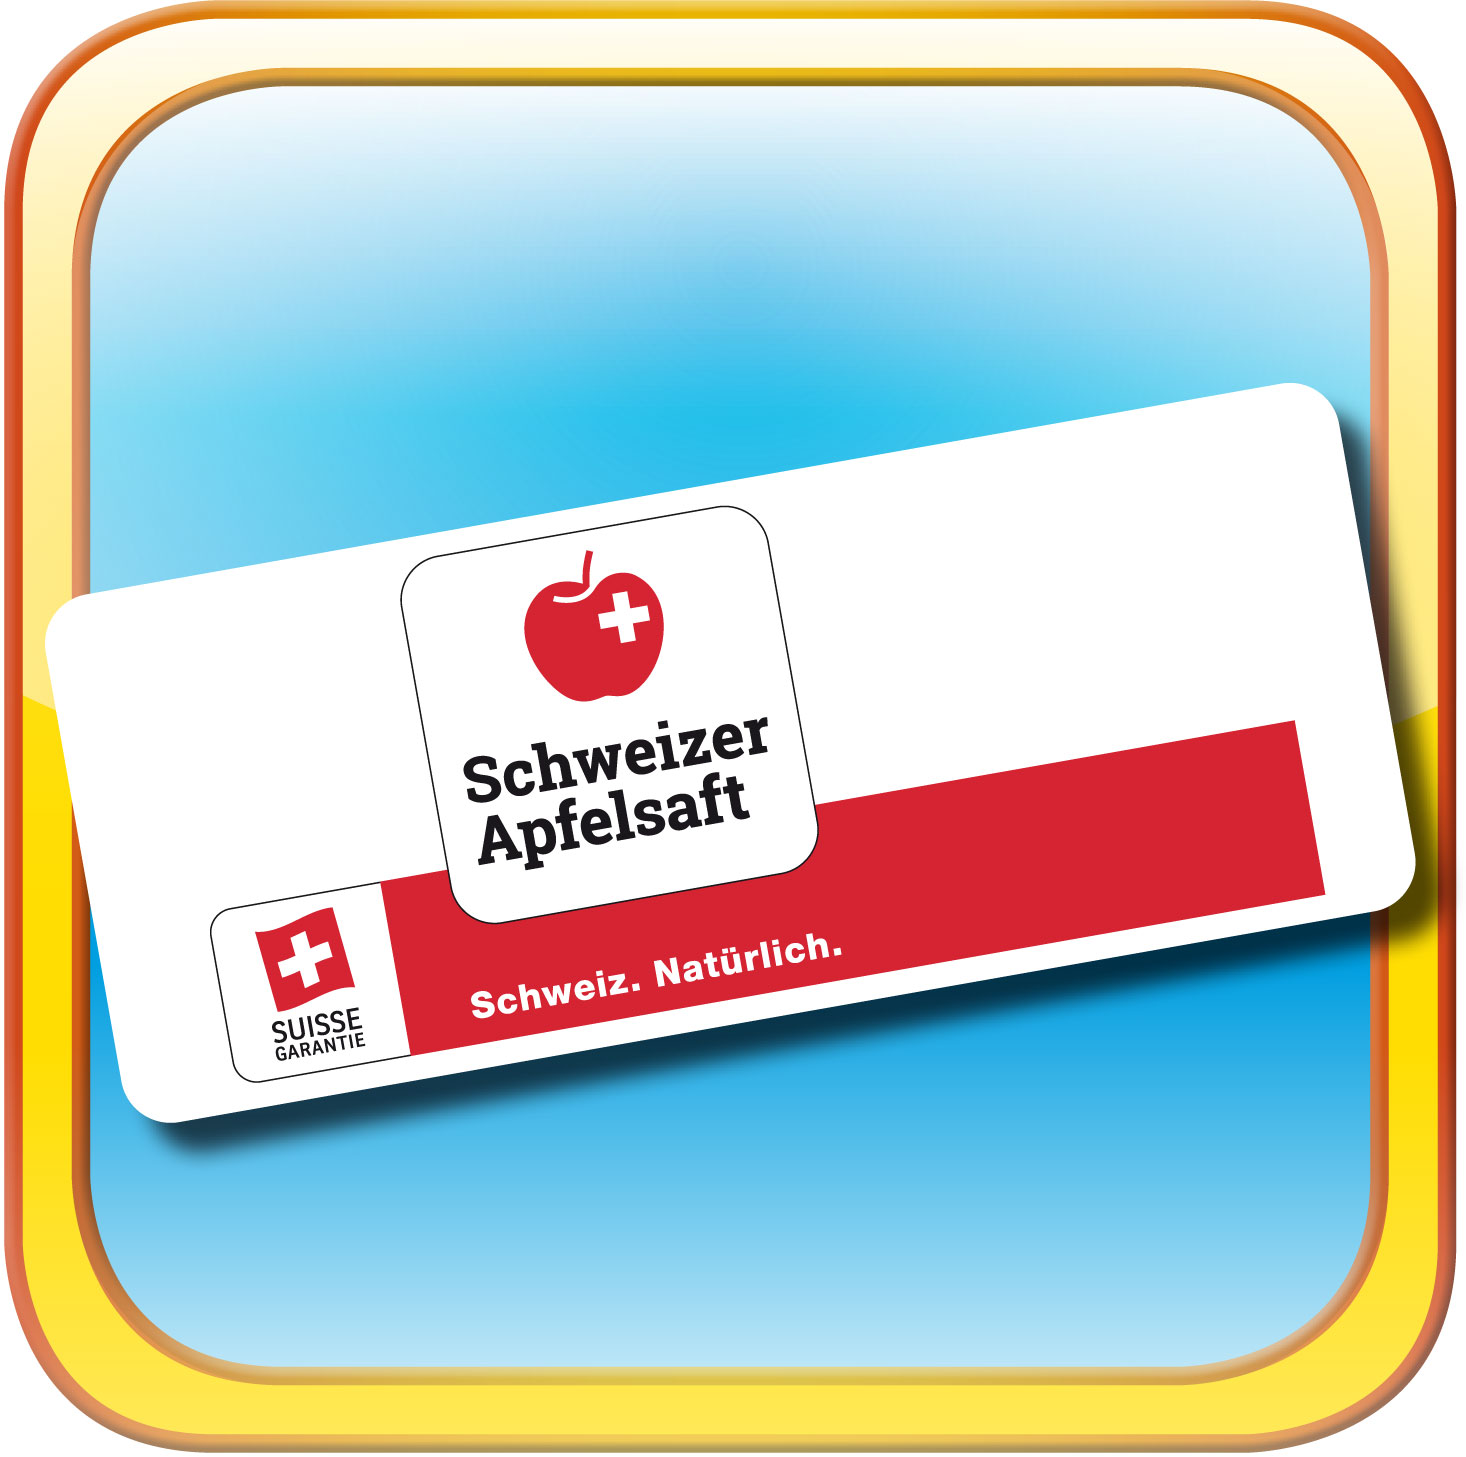 Schweizer Apfelsaft unterstützt das Beltane Parkvolleyball-Turnier in Cham Zug | Schweizer Apfelsaft und das Beltane Volleyball-Turnier